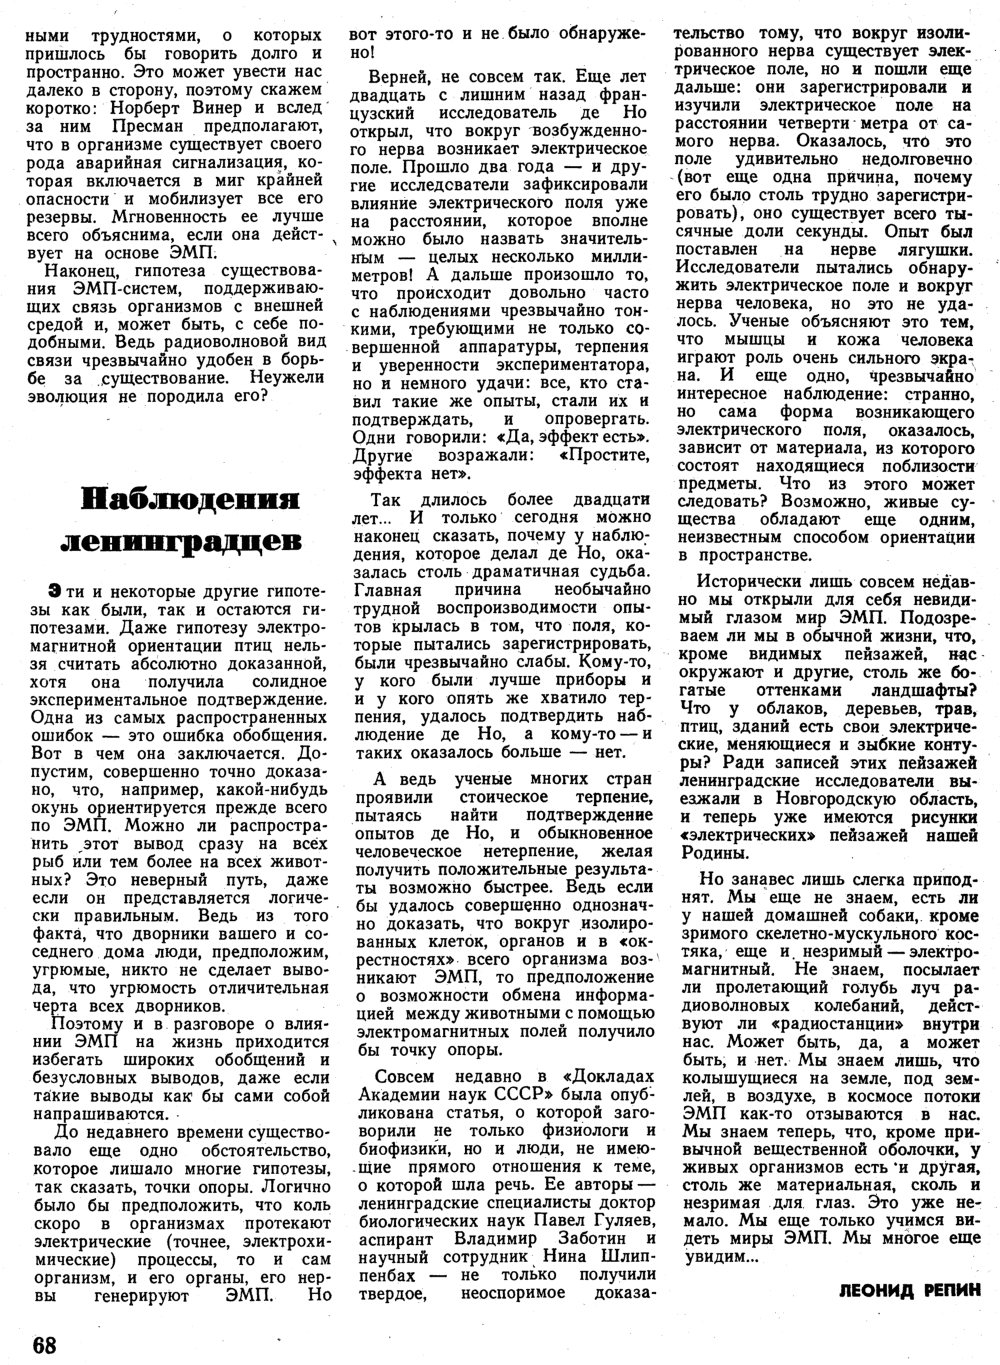 Миры ЭМП. Л. Репин. Вокруг света, 1970, №3, с.65-68. Фотокопия №4